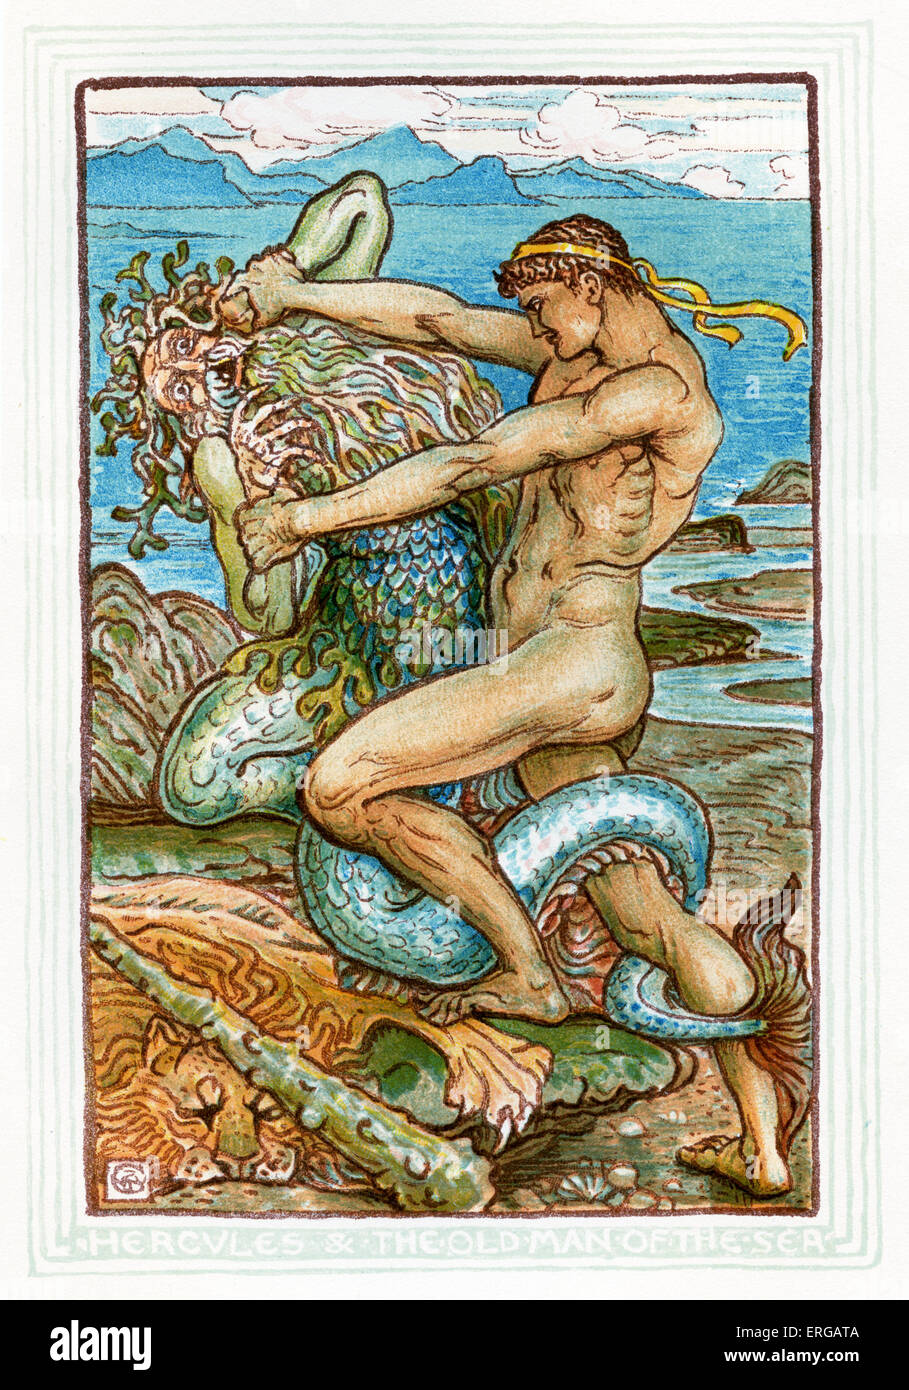 Hercule et le vieil homme de la mer. Racontant des mythes grecs par Nathaniel Hawthorne (1804 - 1864). Illustrations de Walter Banque D'Images